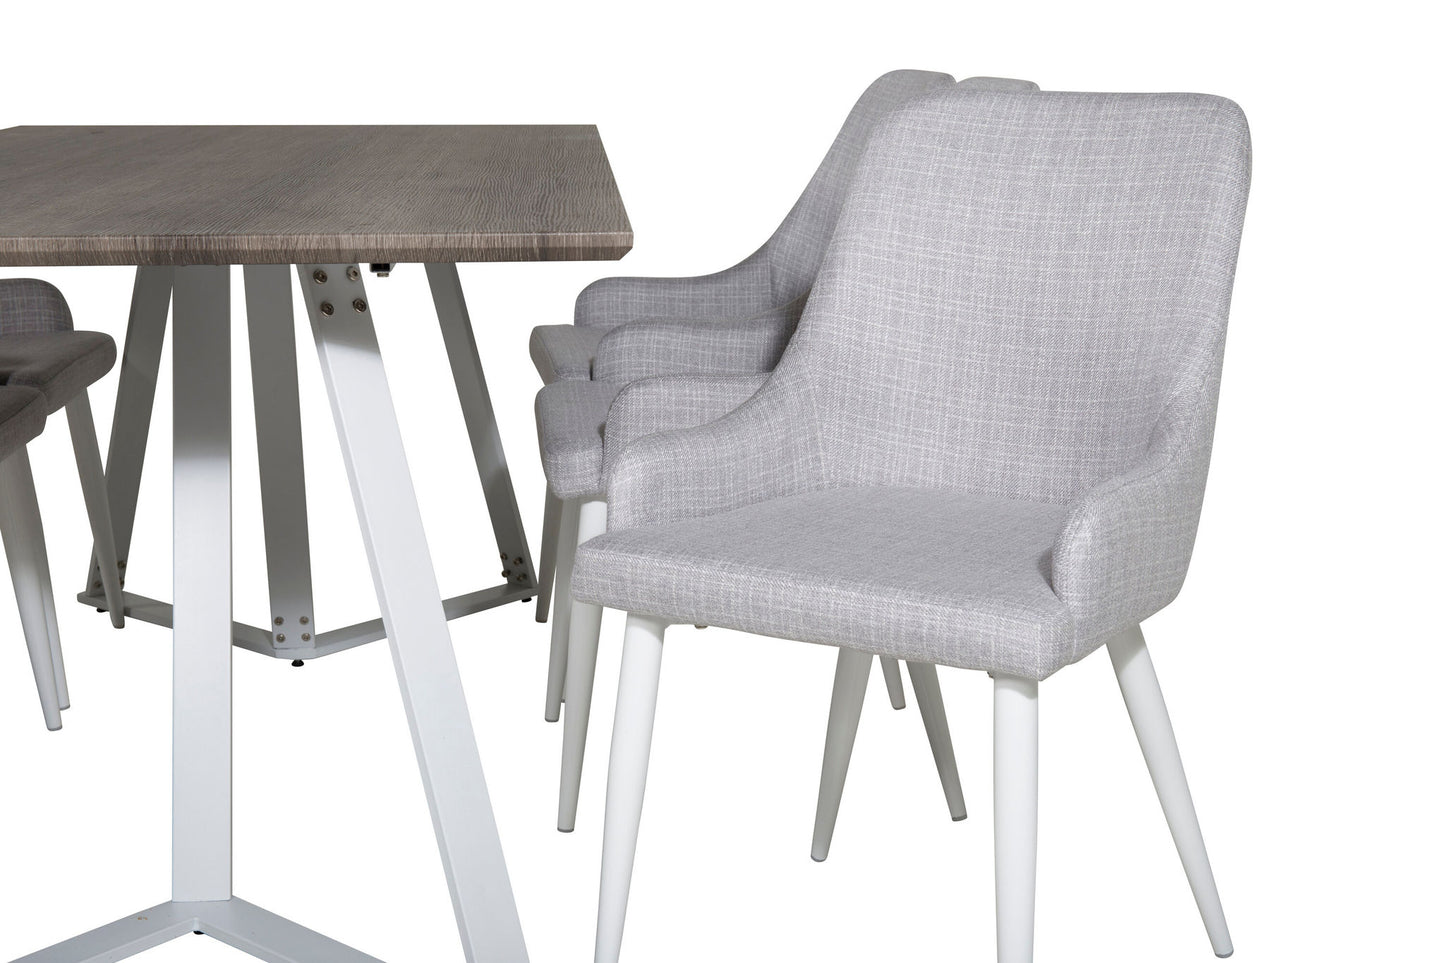 Maria - Spisebord, Grå "oak" / Hvide ben + Plaza stol - Hvide ben - Lysegråt stof